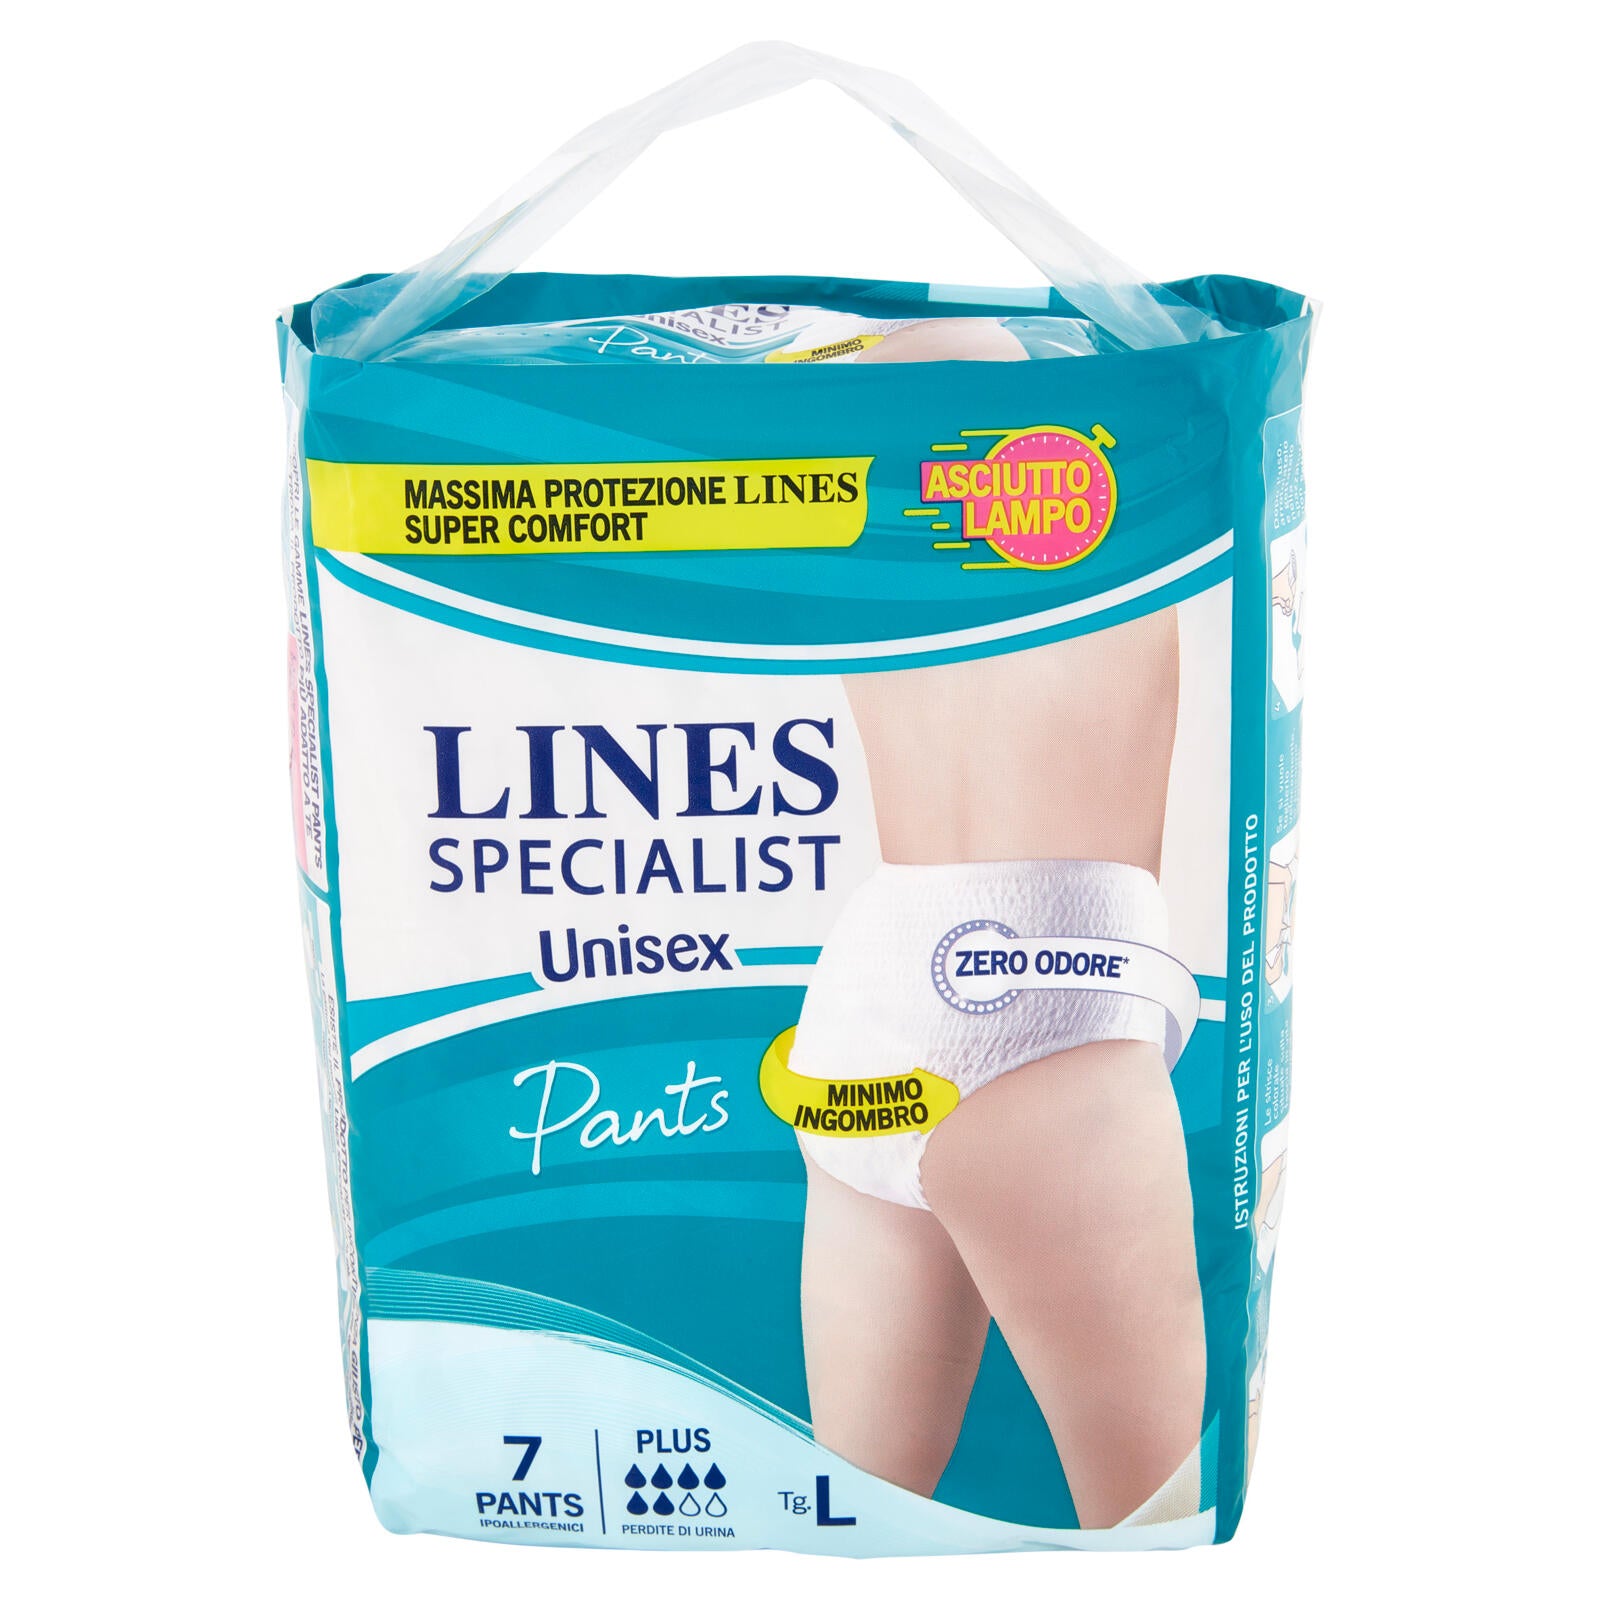 Lines Specialist Unisex Plus Pants Ipoallergenici Tg.L 7 pz ->